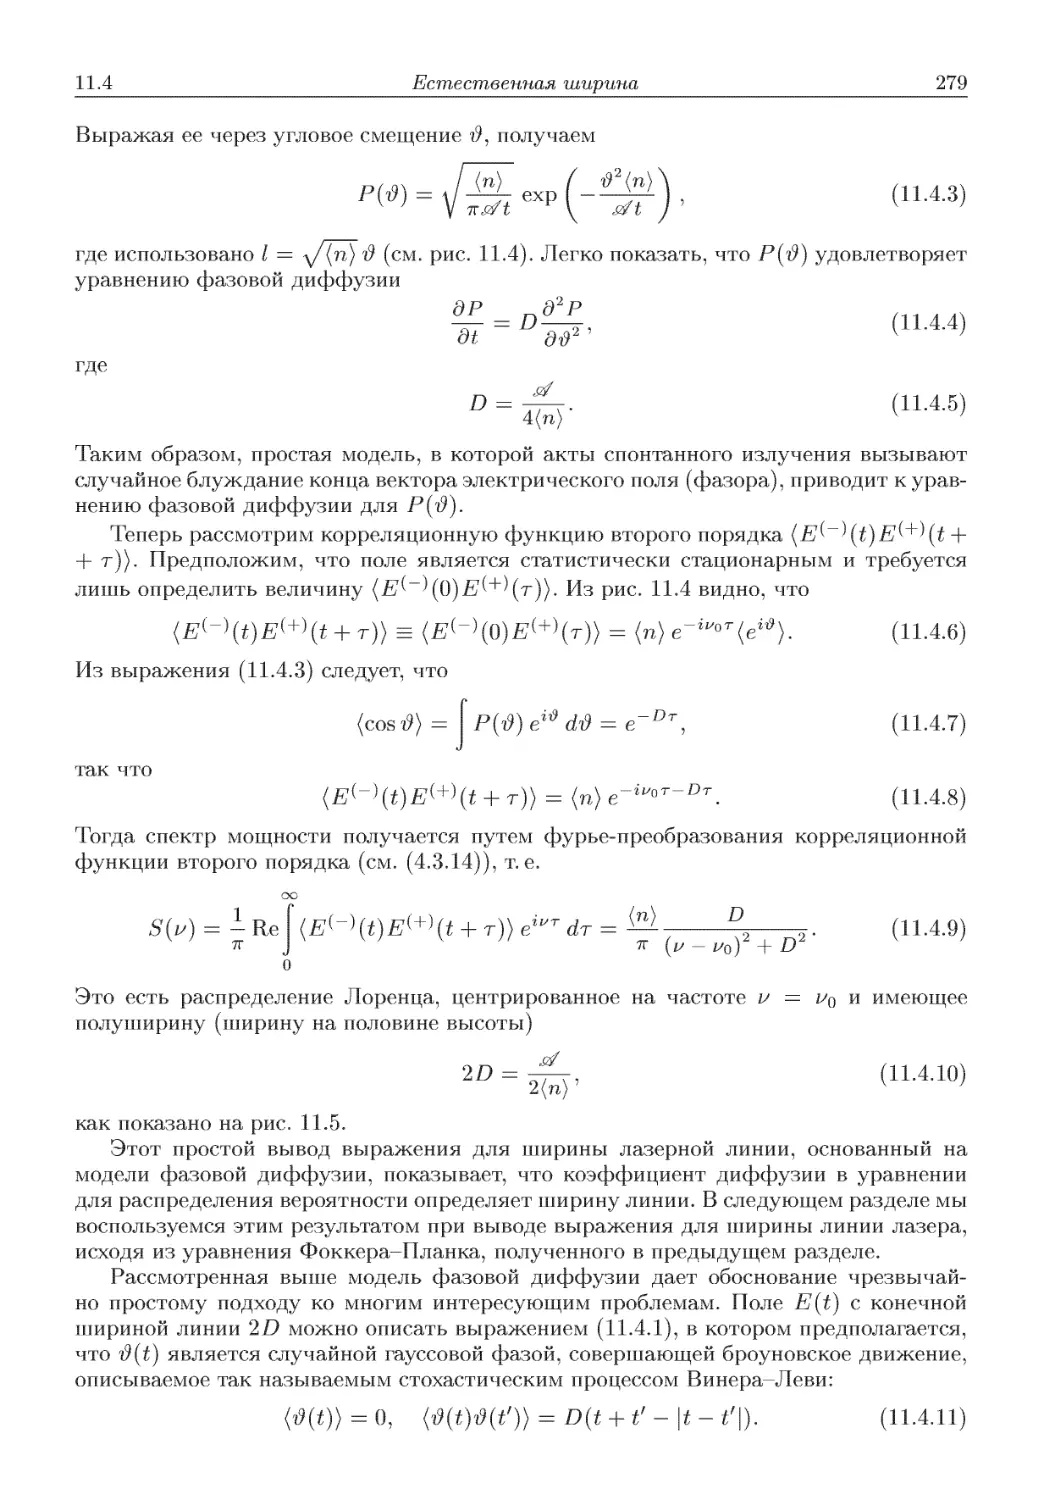 11.4.2. Уравнение Фоккера-Планка и ширина линии излучения лазера